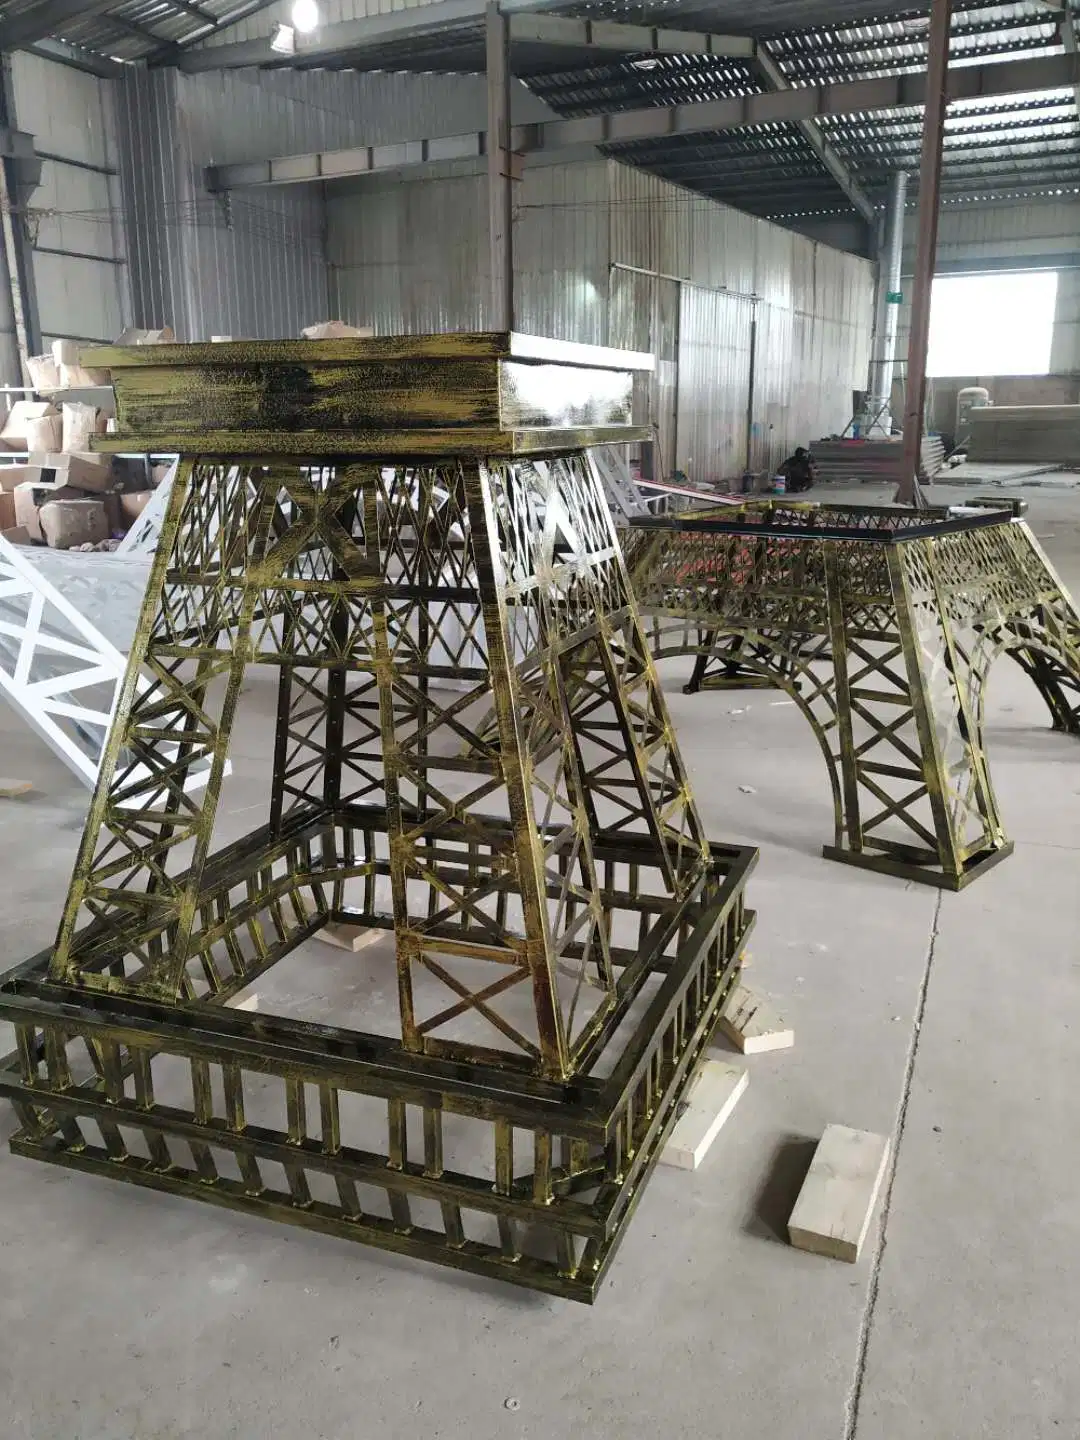 Outdoor Metal Gigante 8m, 10m da Torre Eiffel Modelo 3D com preço de atacado